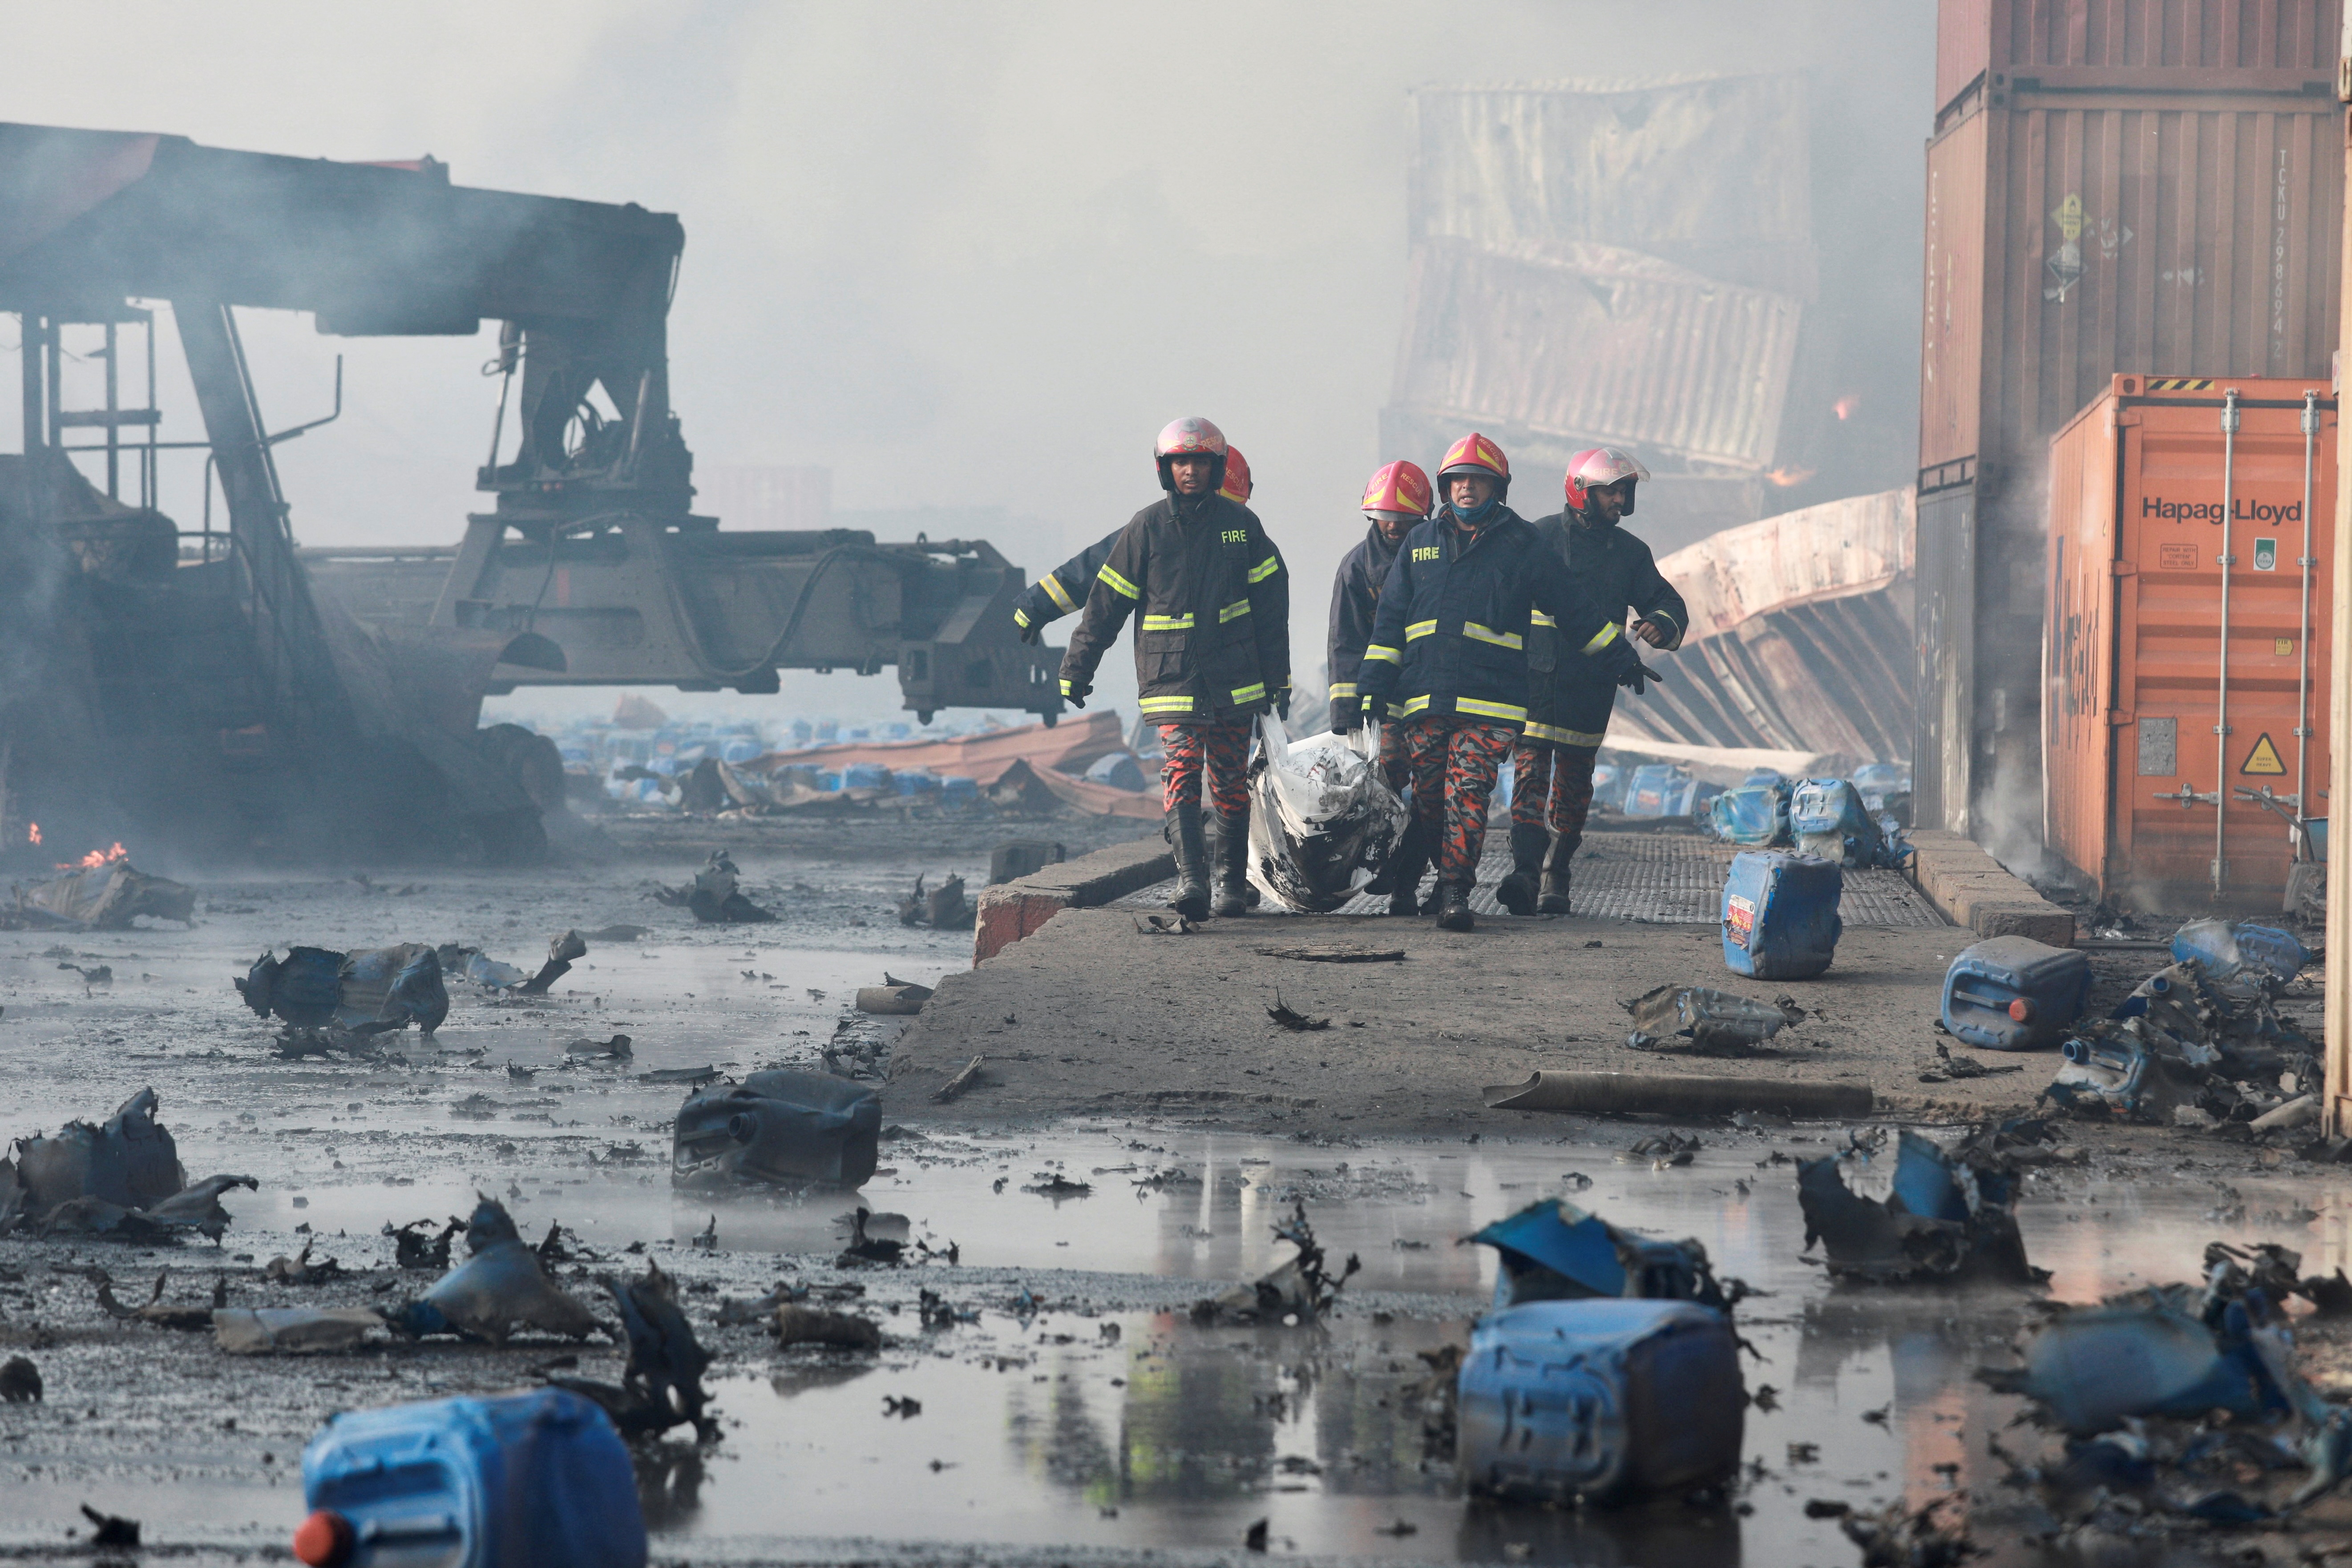 Entre los muertos había al menos cinco bomberos, según el general de brigada Main Uddin, director general del servicio de bomberos y defensa civil en Bangladesh. Otros 15 bomberos recibirán tratamiento por quemaduras, añadió. REUTERS/Stringer